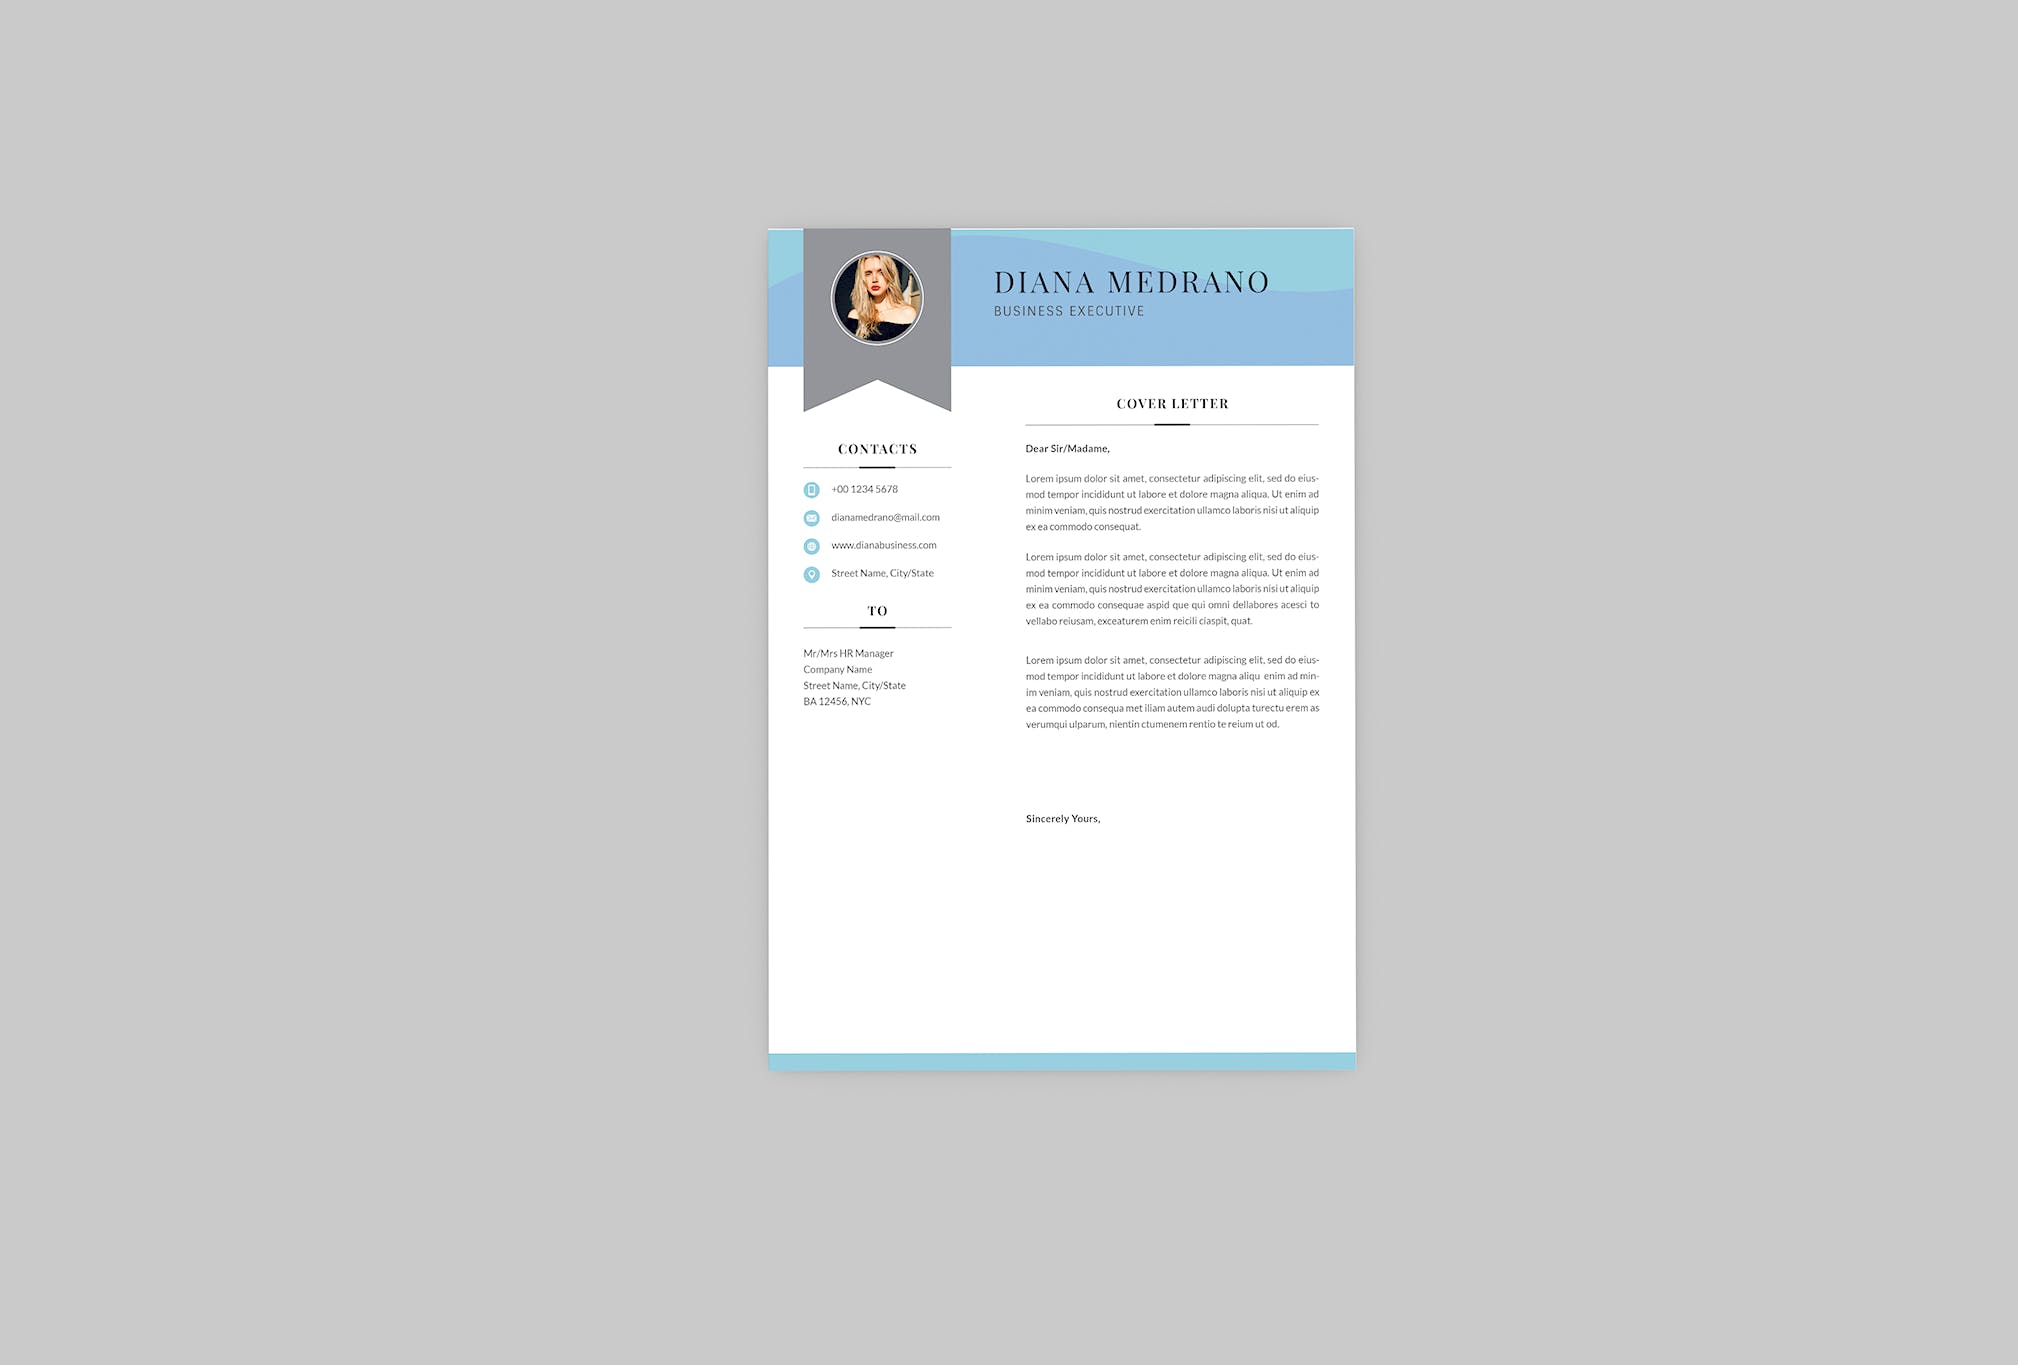 3合1企业主管电子素材库精选简历模板 Diana Business Resume Designer插图(1)